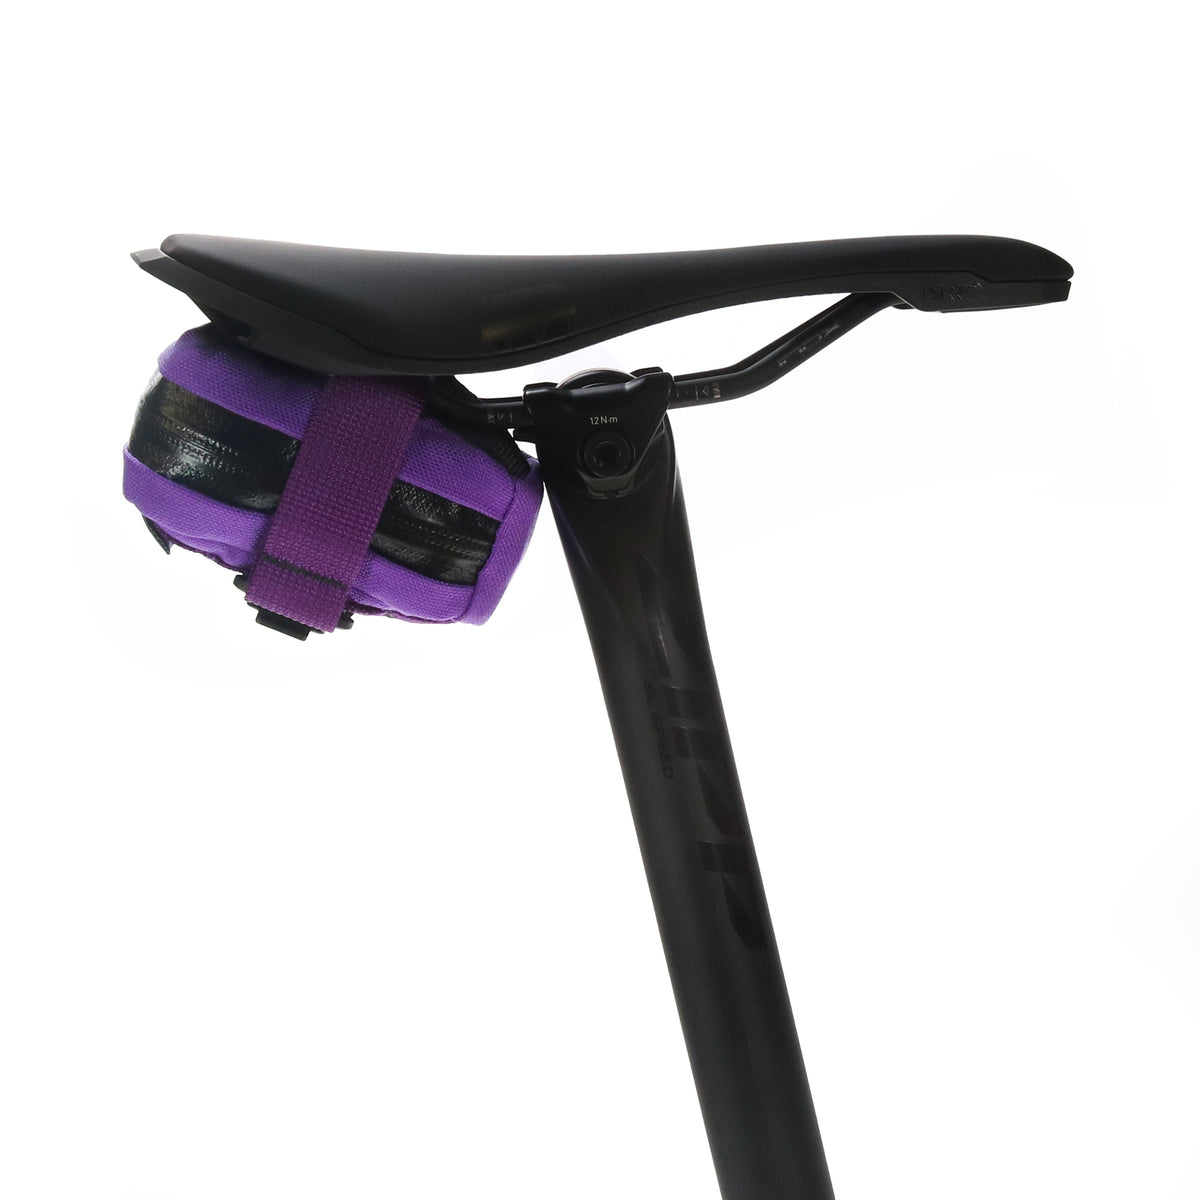 skingrowsback Plan B Micron cycling saddle bag Purple